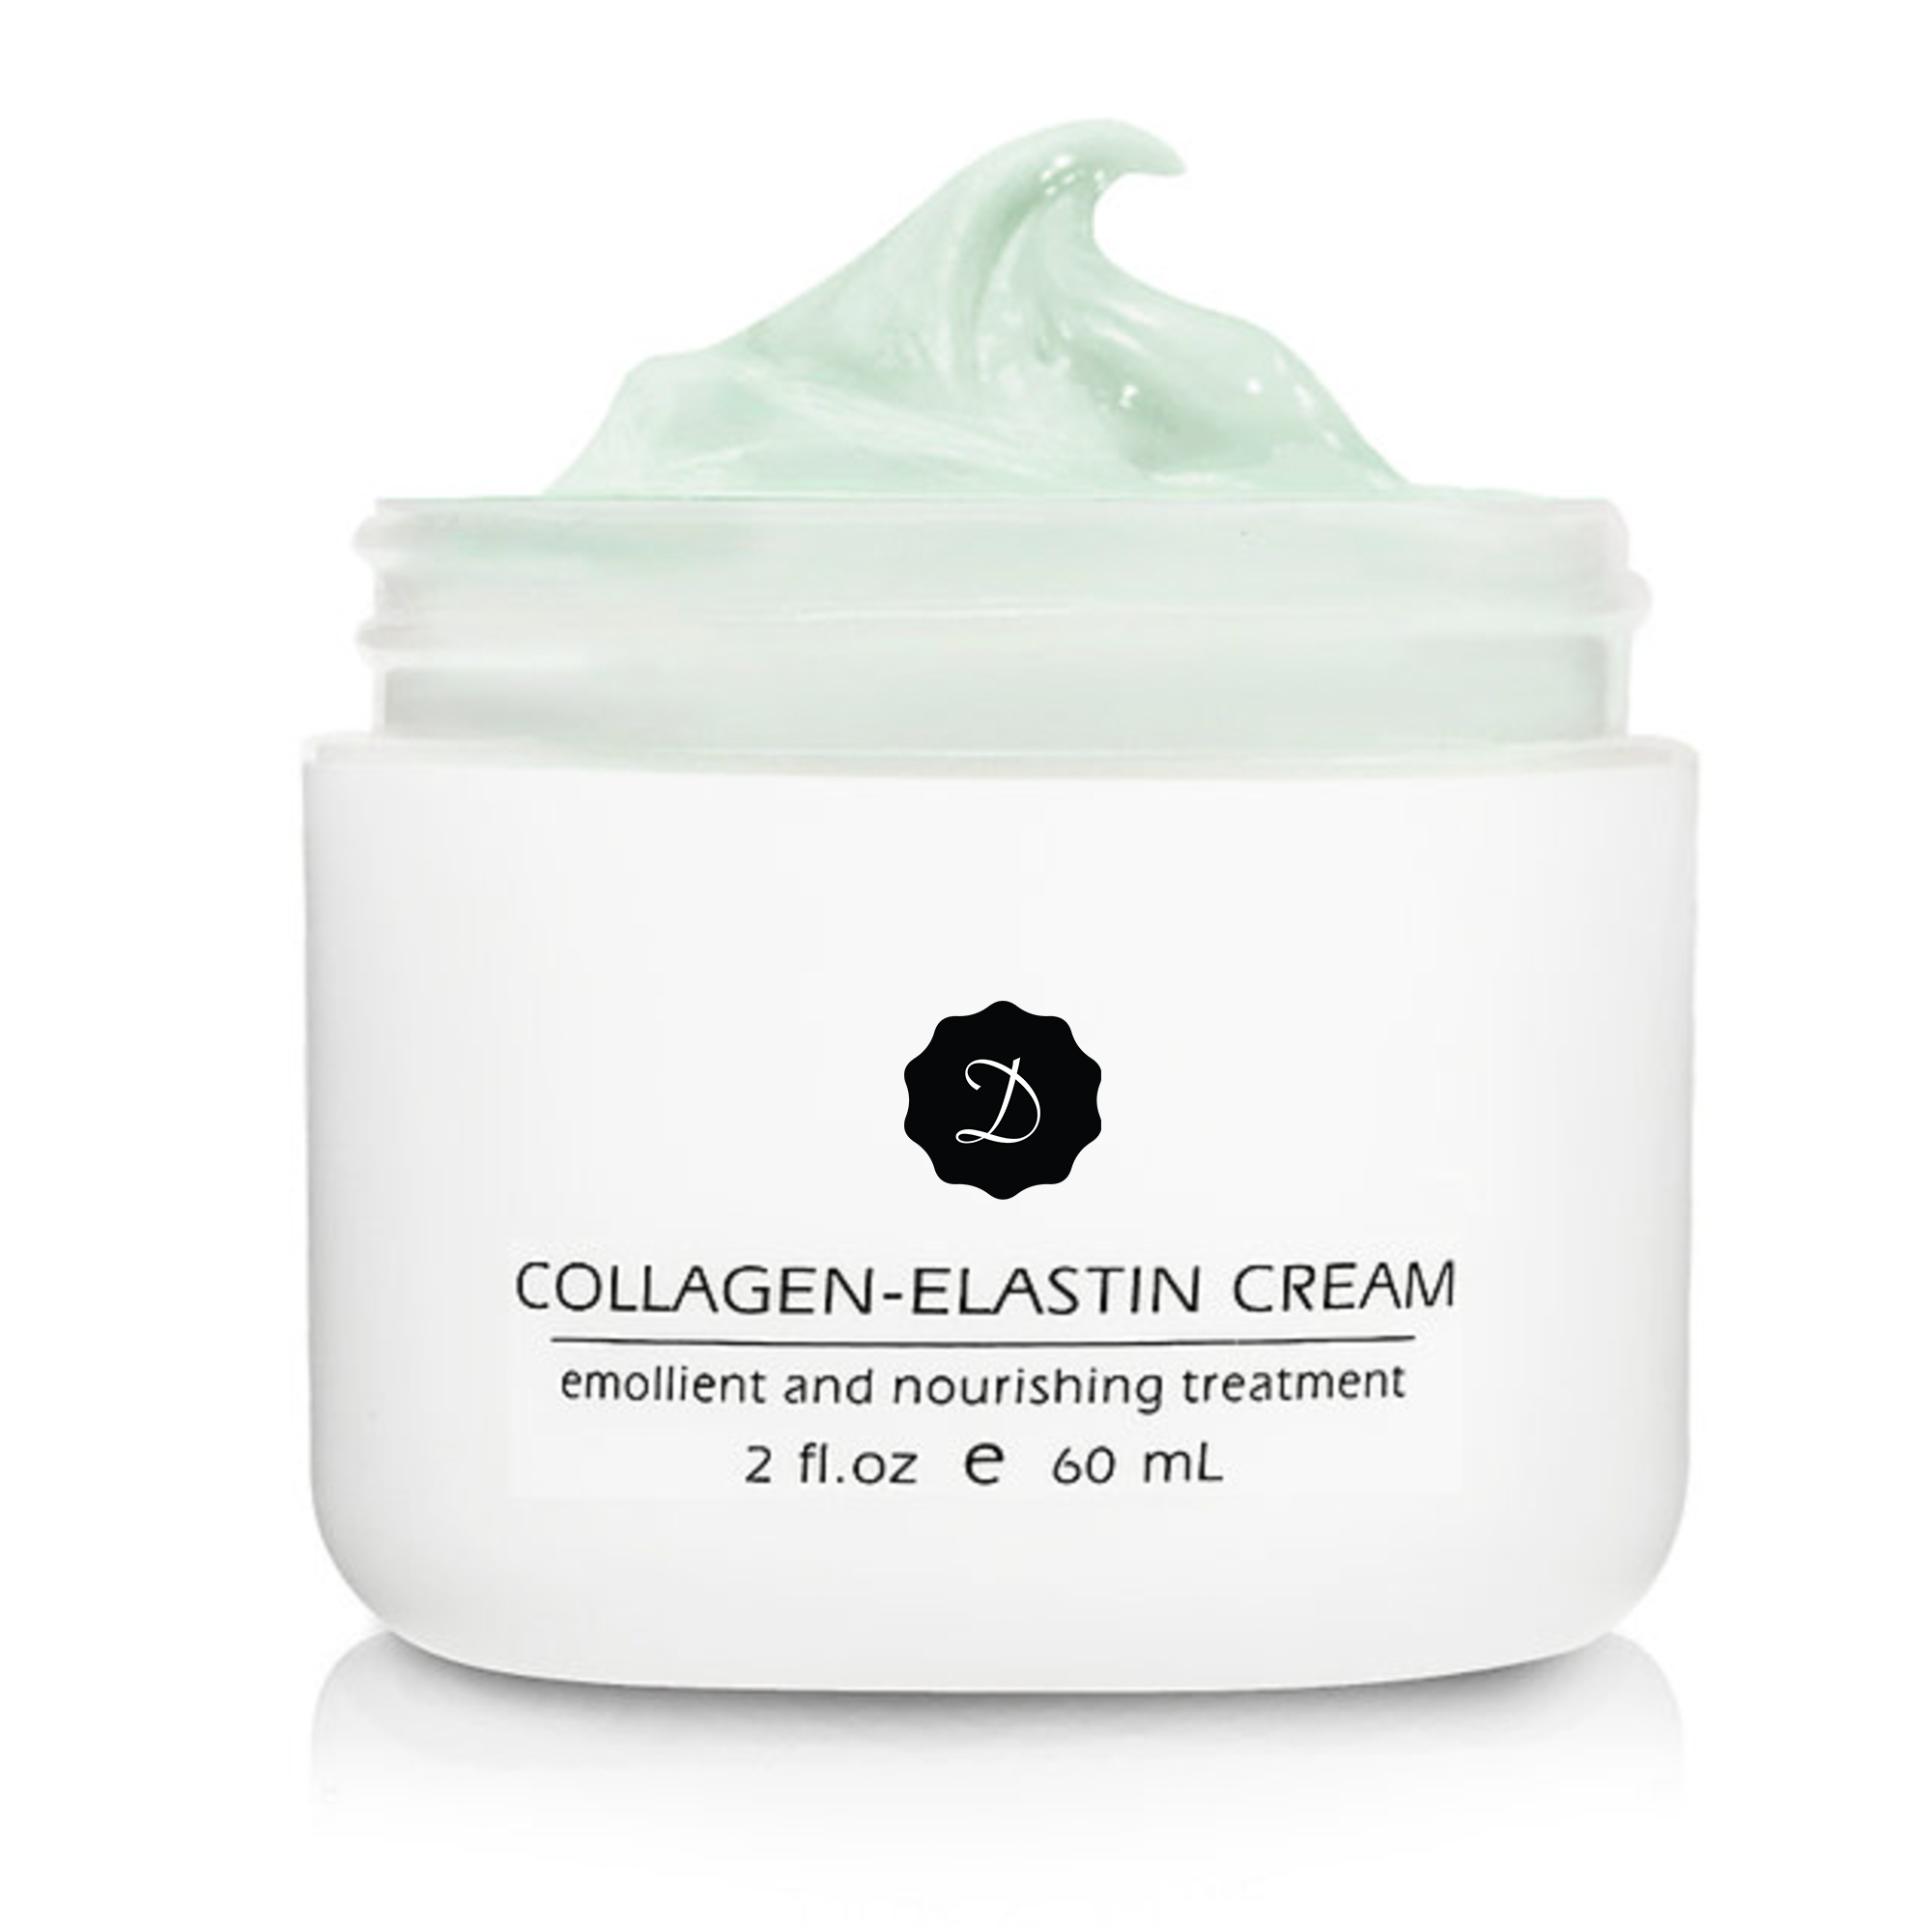 Collagen-Elastin Cream